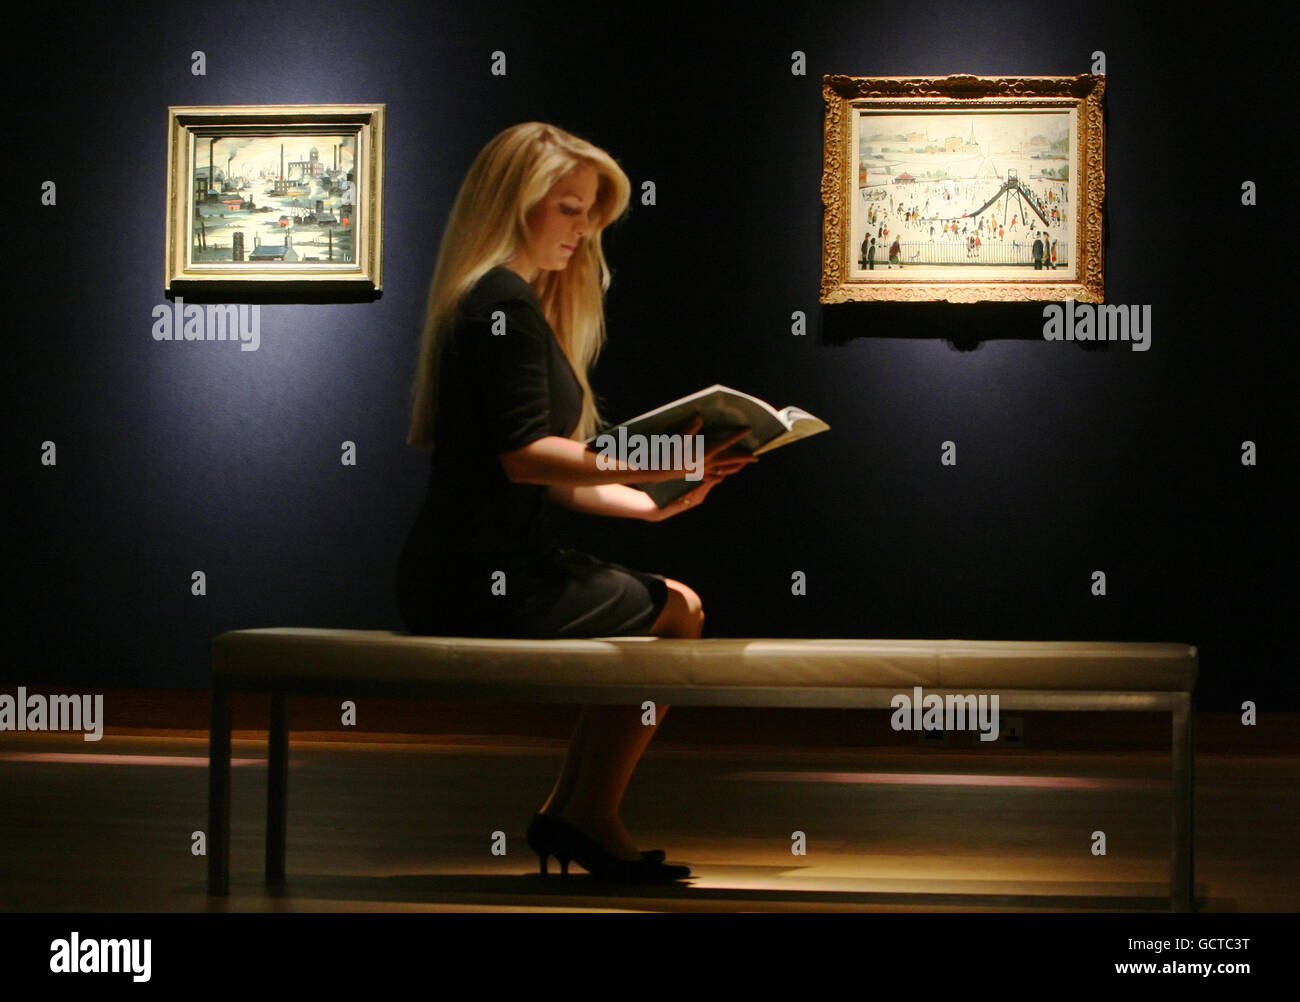 Un employé de Christie (nom non donné) voit un catalogue pour la vente d'œuvres de L S Lowry à Londres. Banque D'Images